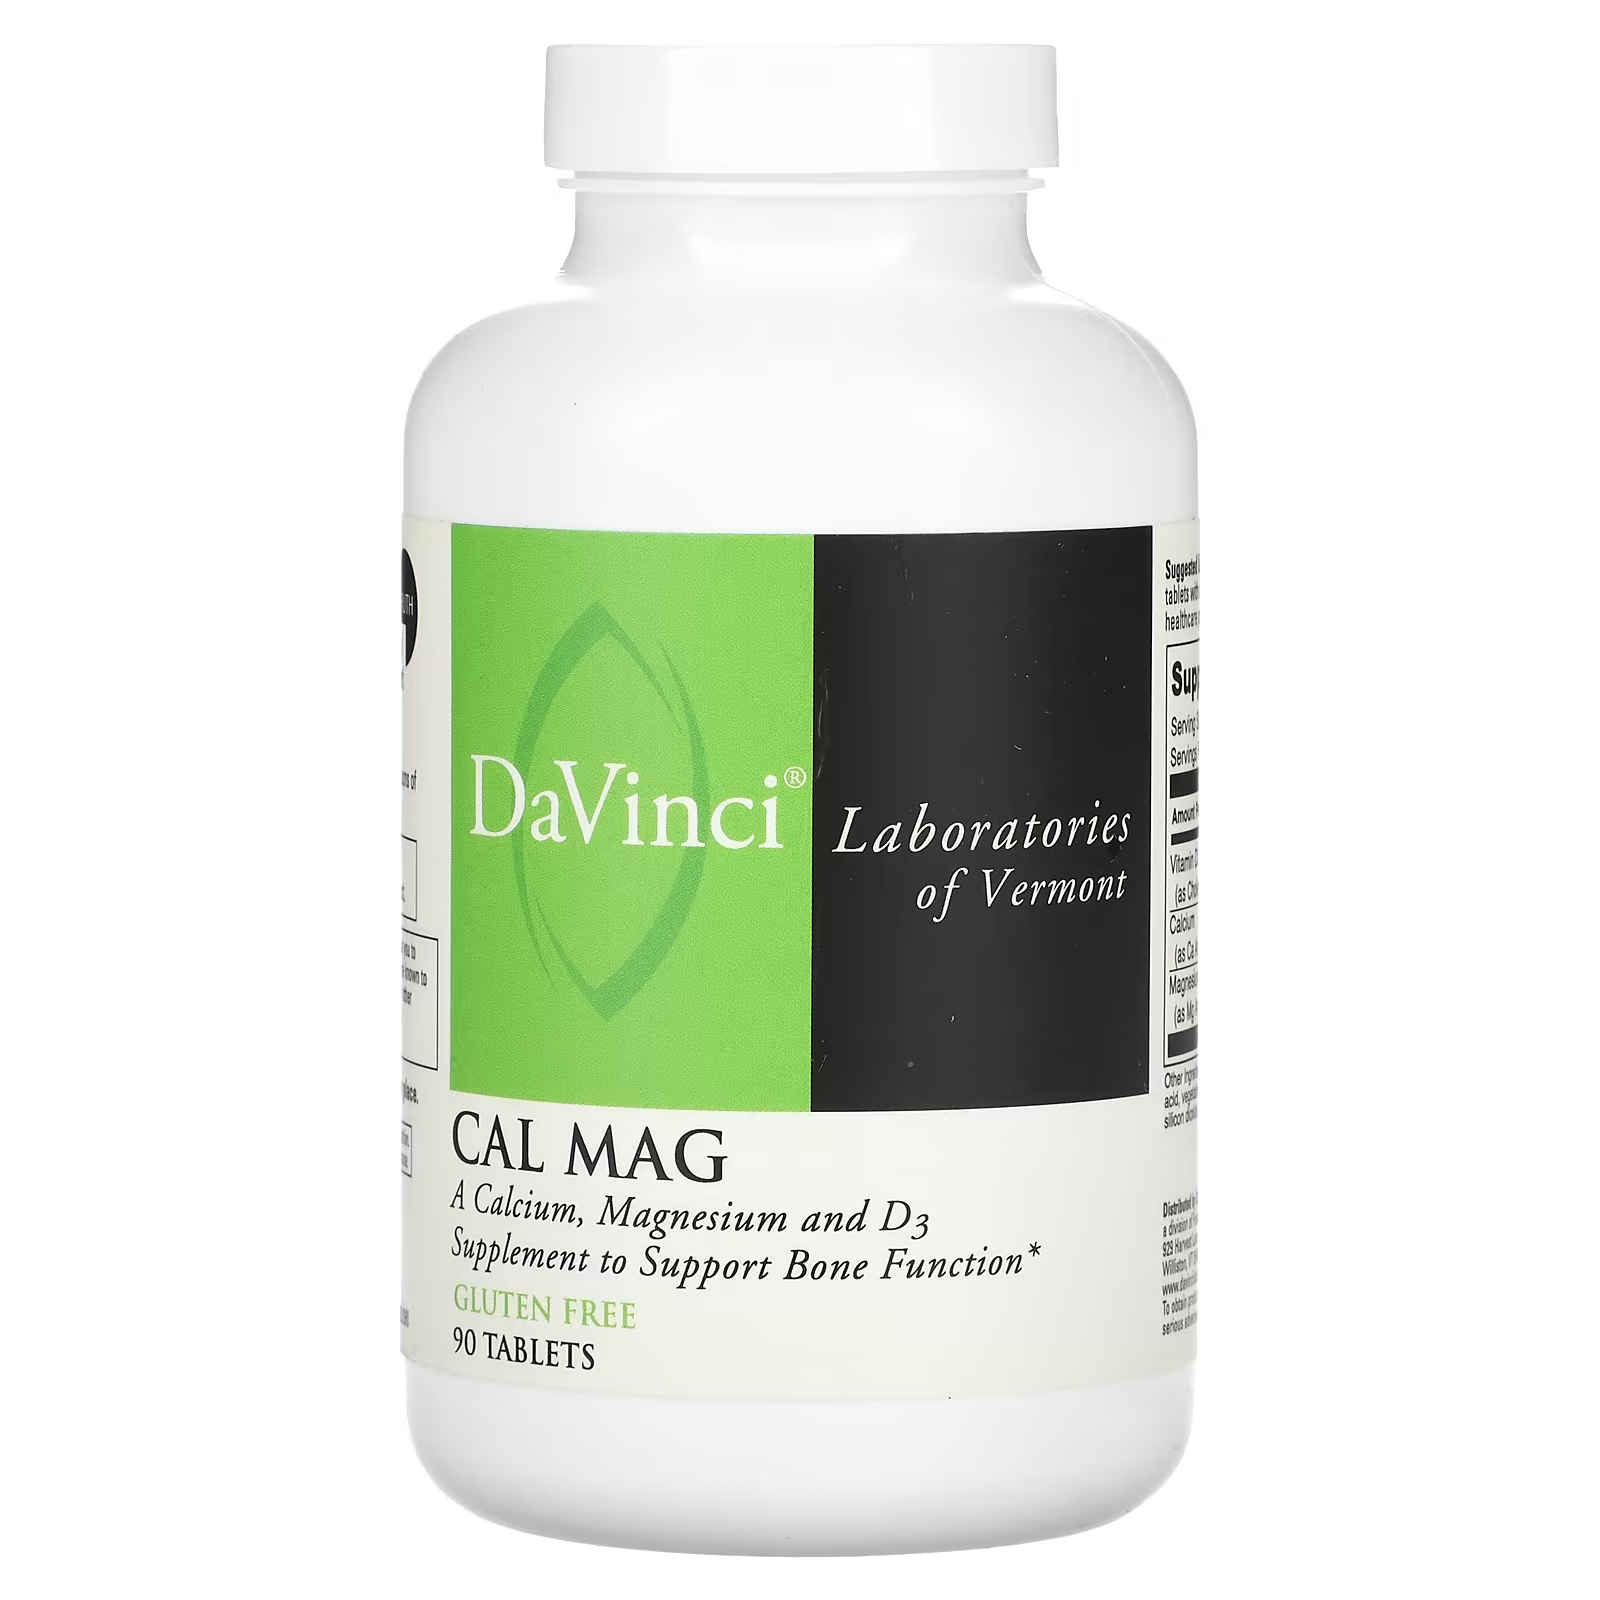 Пищевая добавка DaVinci Laboratories of Vermont Cal Mag, 90 таблеток пищевая добавка lifeable с кальцием магнием цинком и витамином d3 натуральная малина 90 жевательных конфет